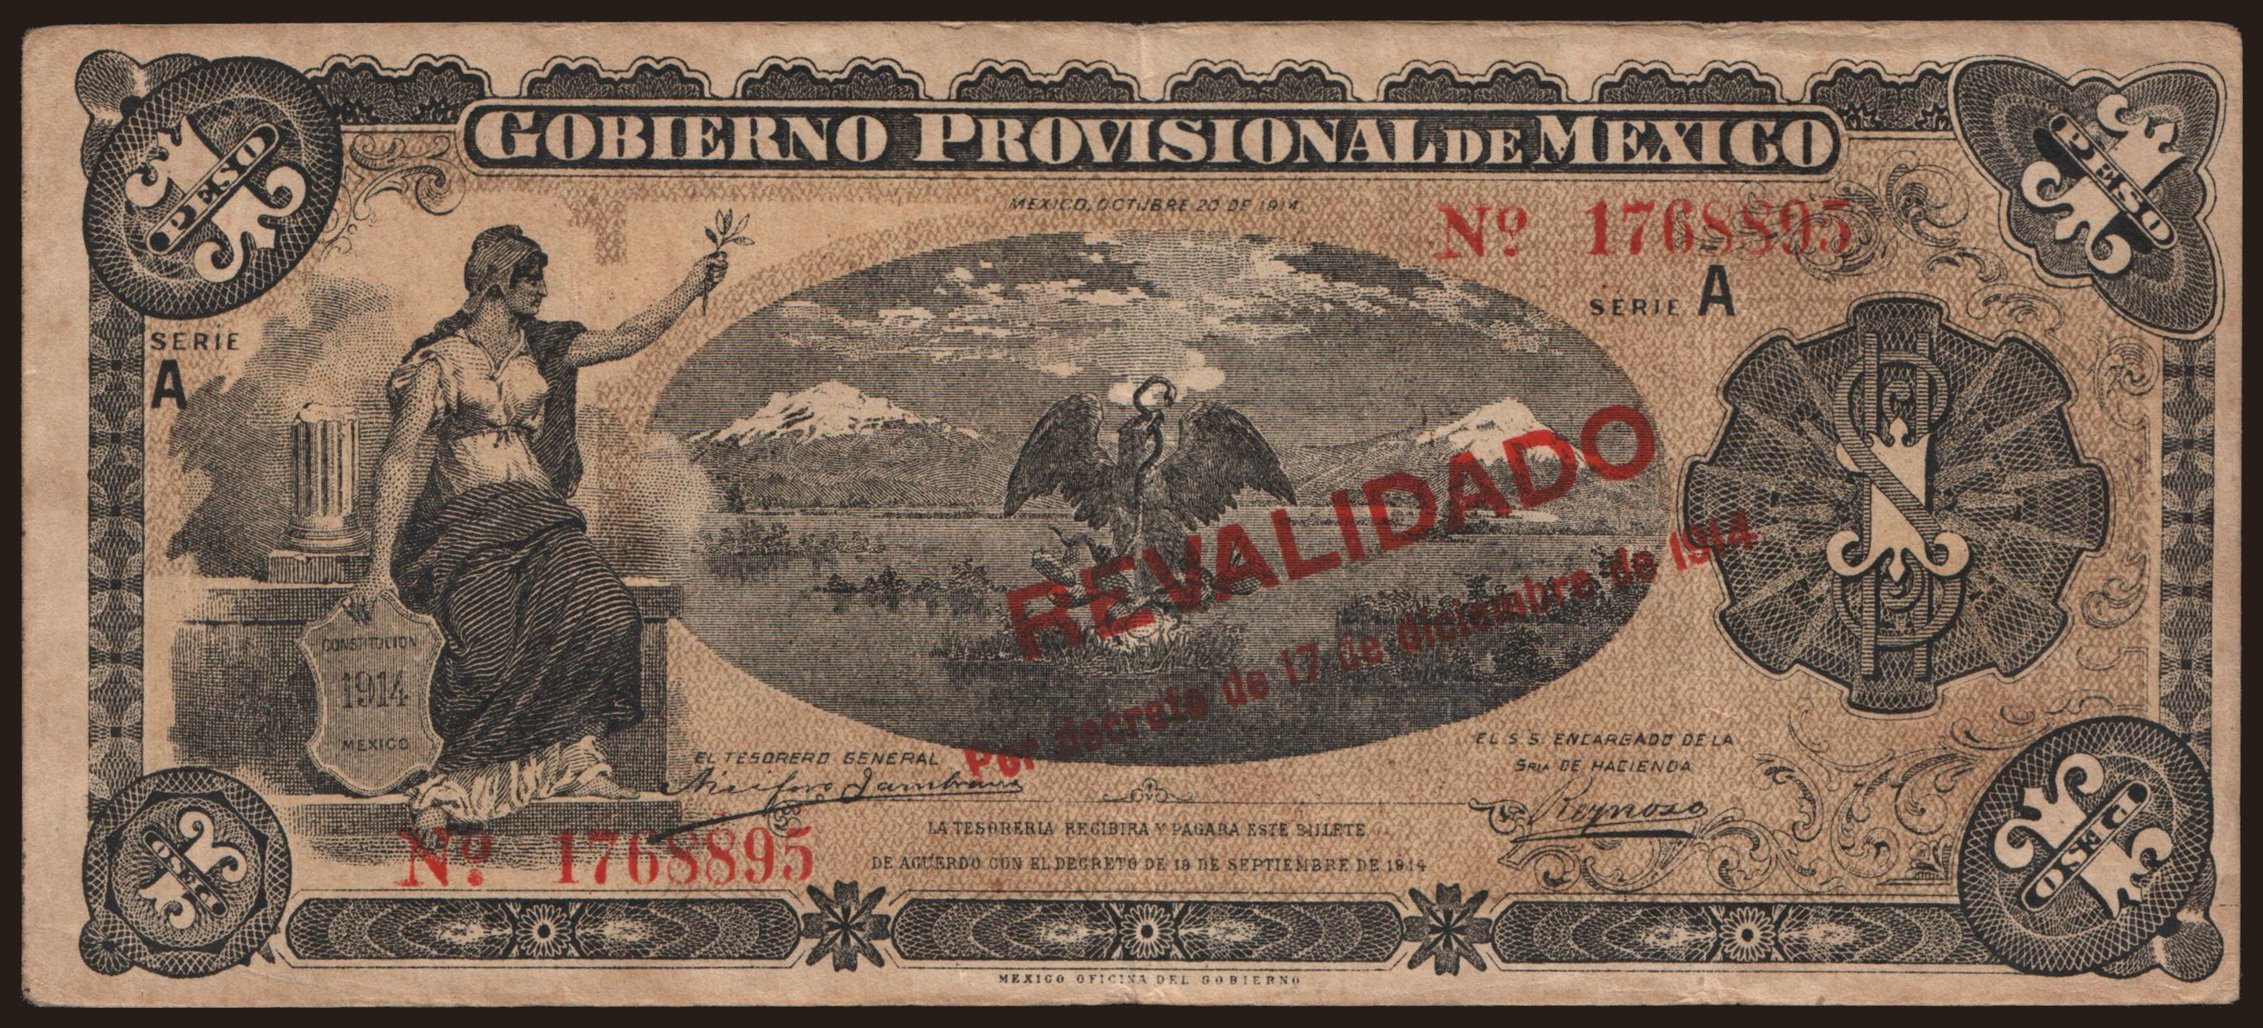 Gobierno Provisional de Mexico, 1 peso, 1914